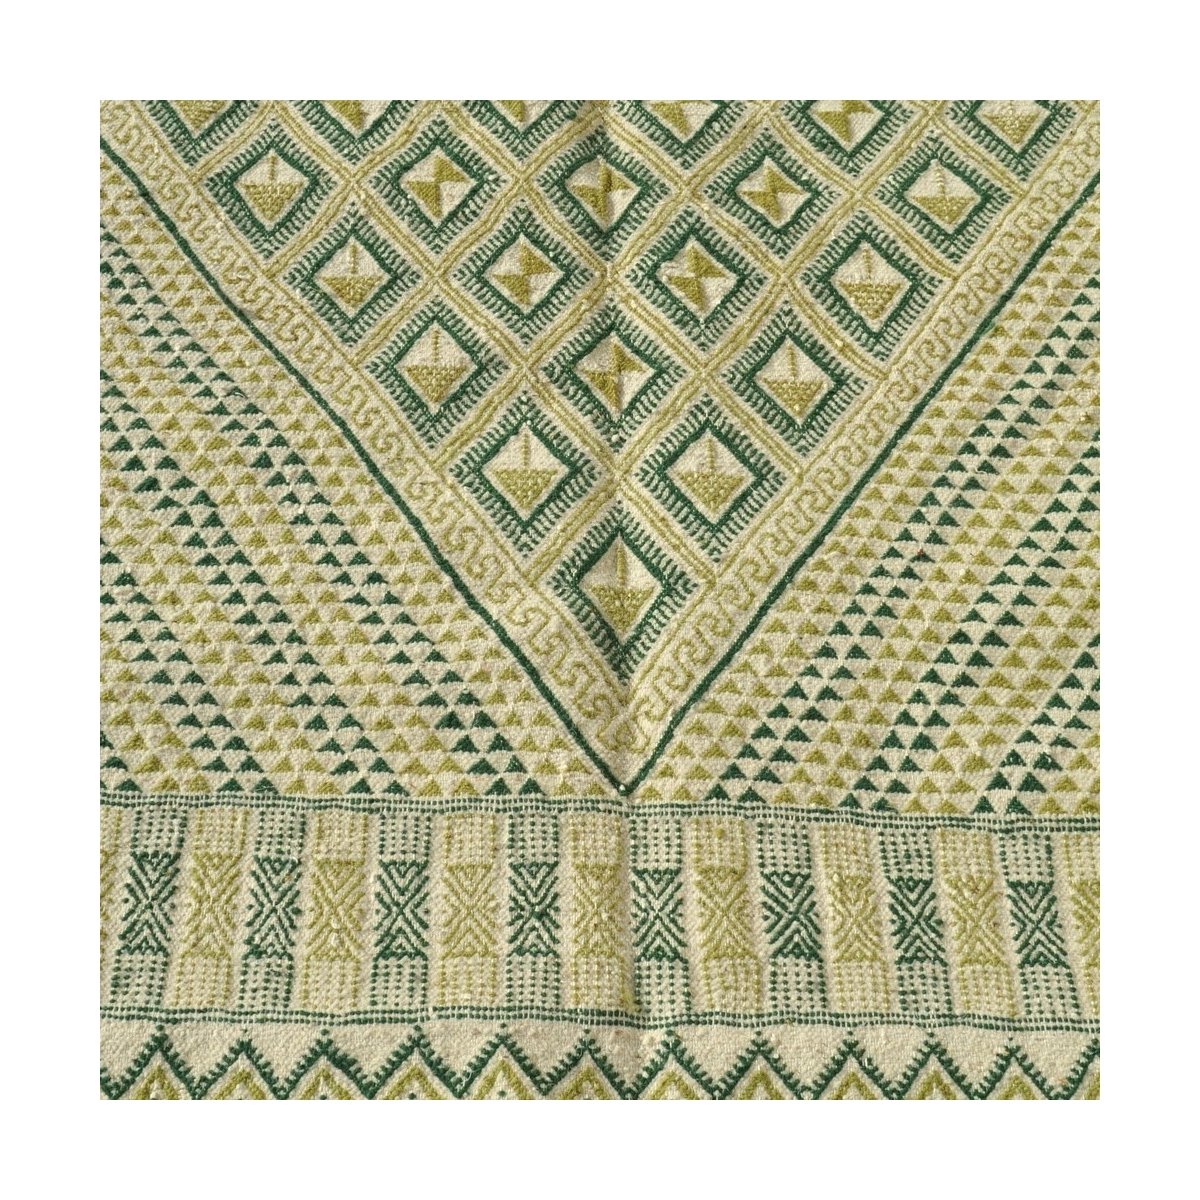 Berber tapijt Groot Tapijt Margoum Nebtaa 160x245 Wit/Groen (Handgeweven, Wol, Tunesië) Tunesisch Margoum Tapijt uit de stad Kai